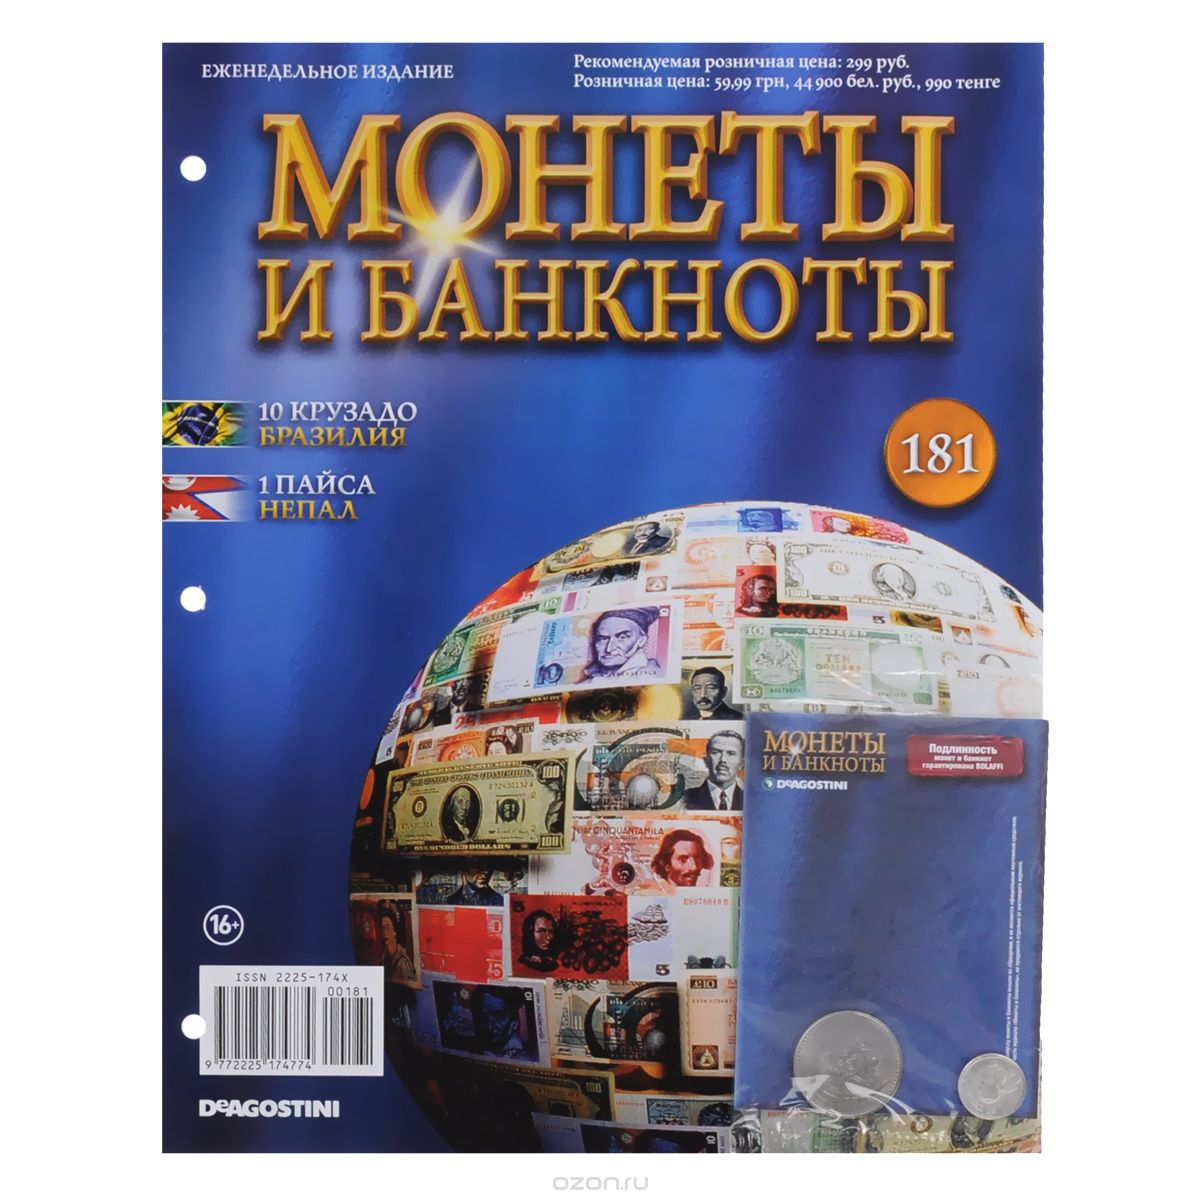 Журнал "Монеты и банкноты" №181